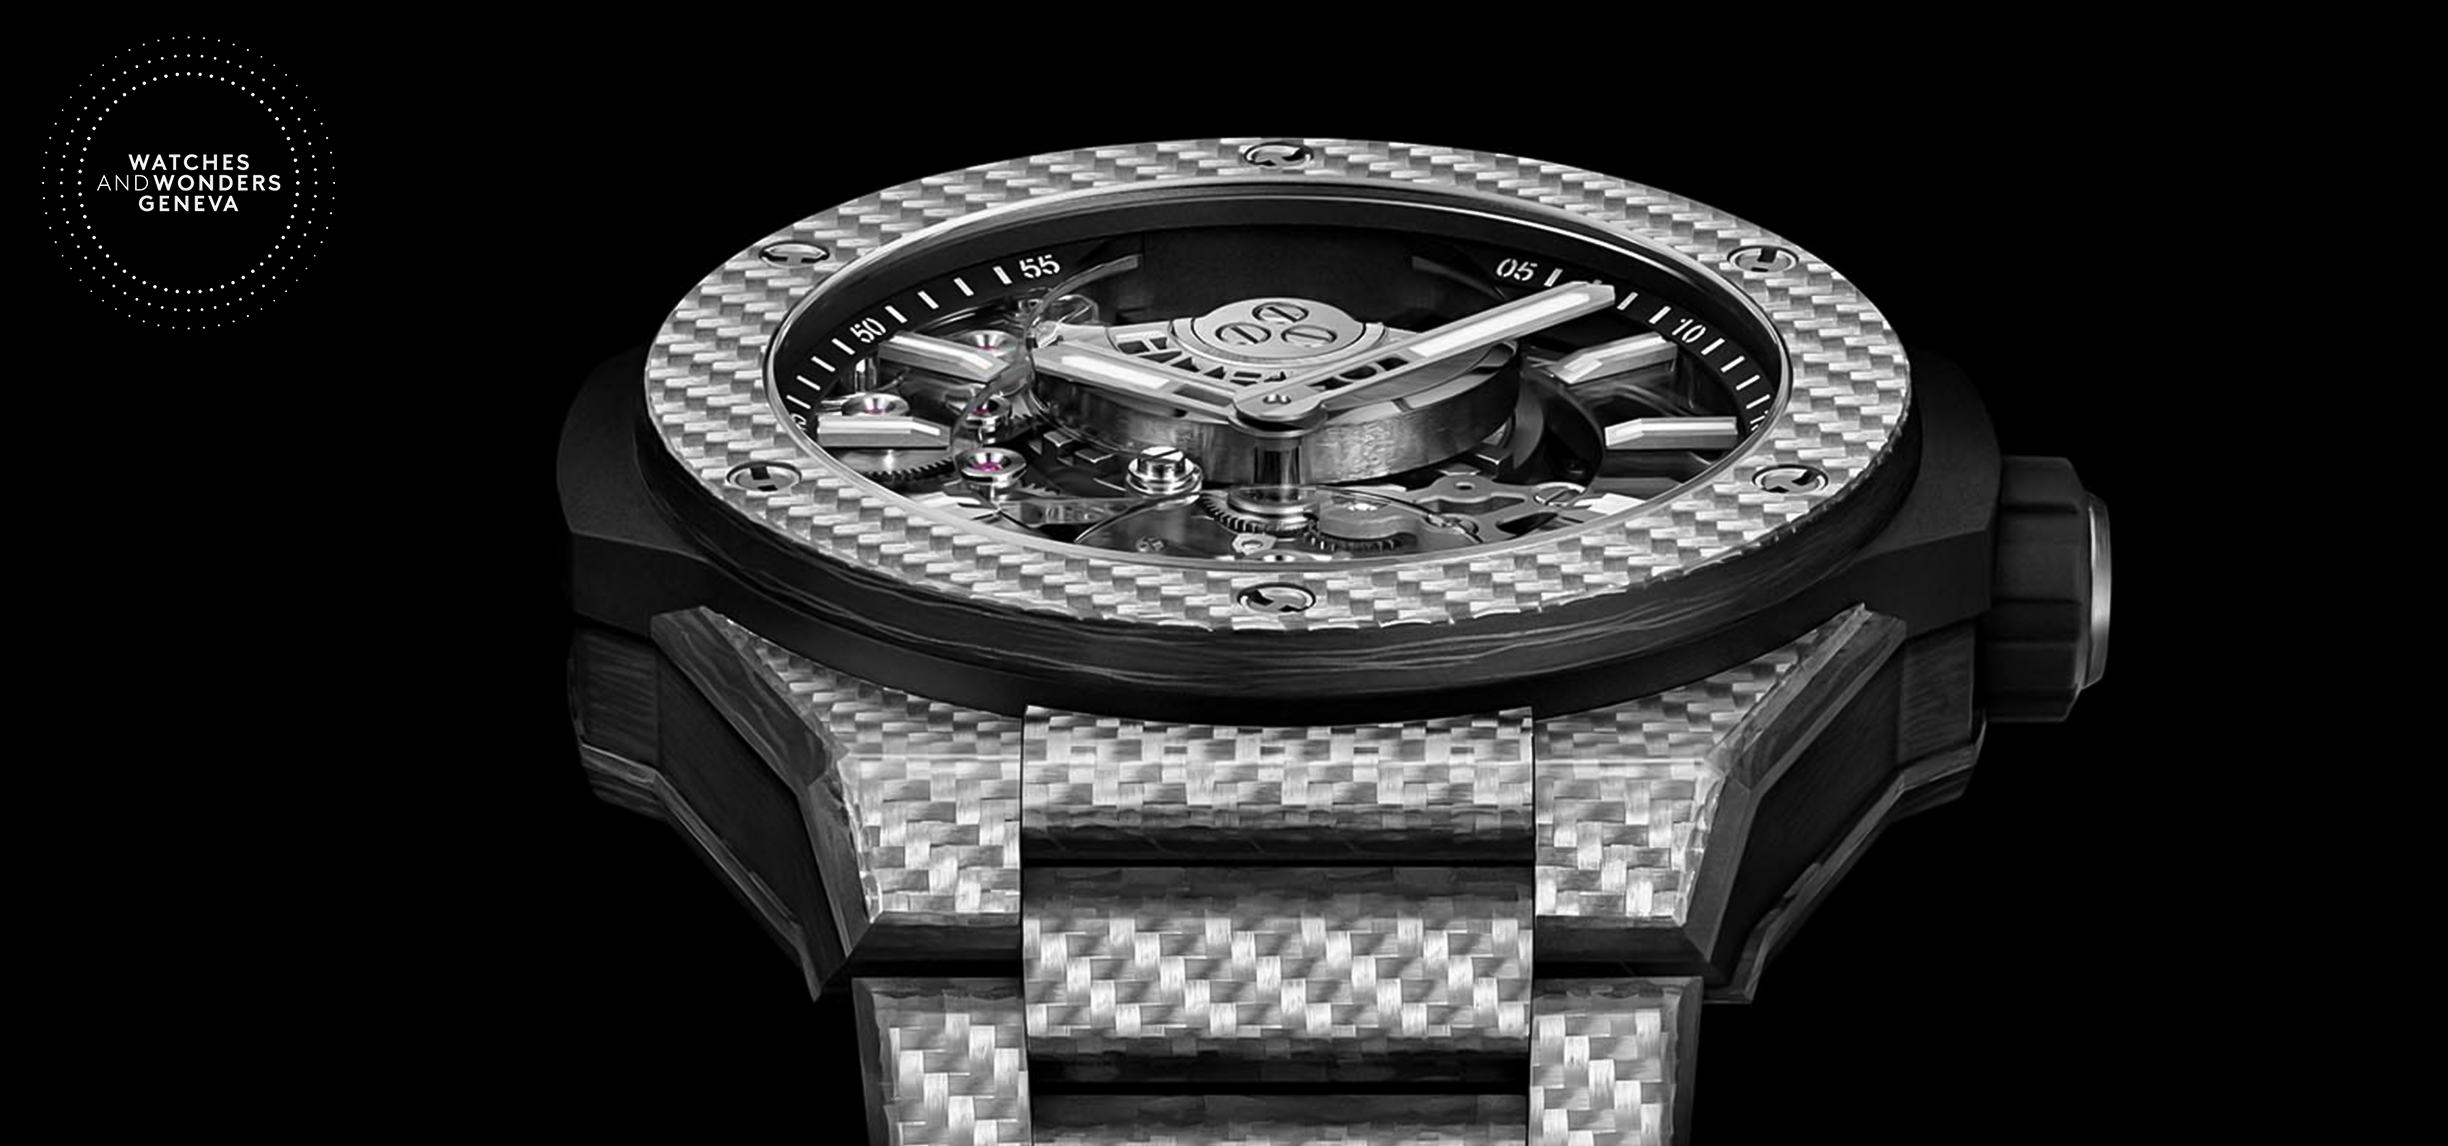 Watches & Wonders 2021: Louis Moinet Releases The Unique 8